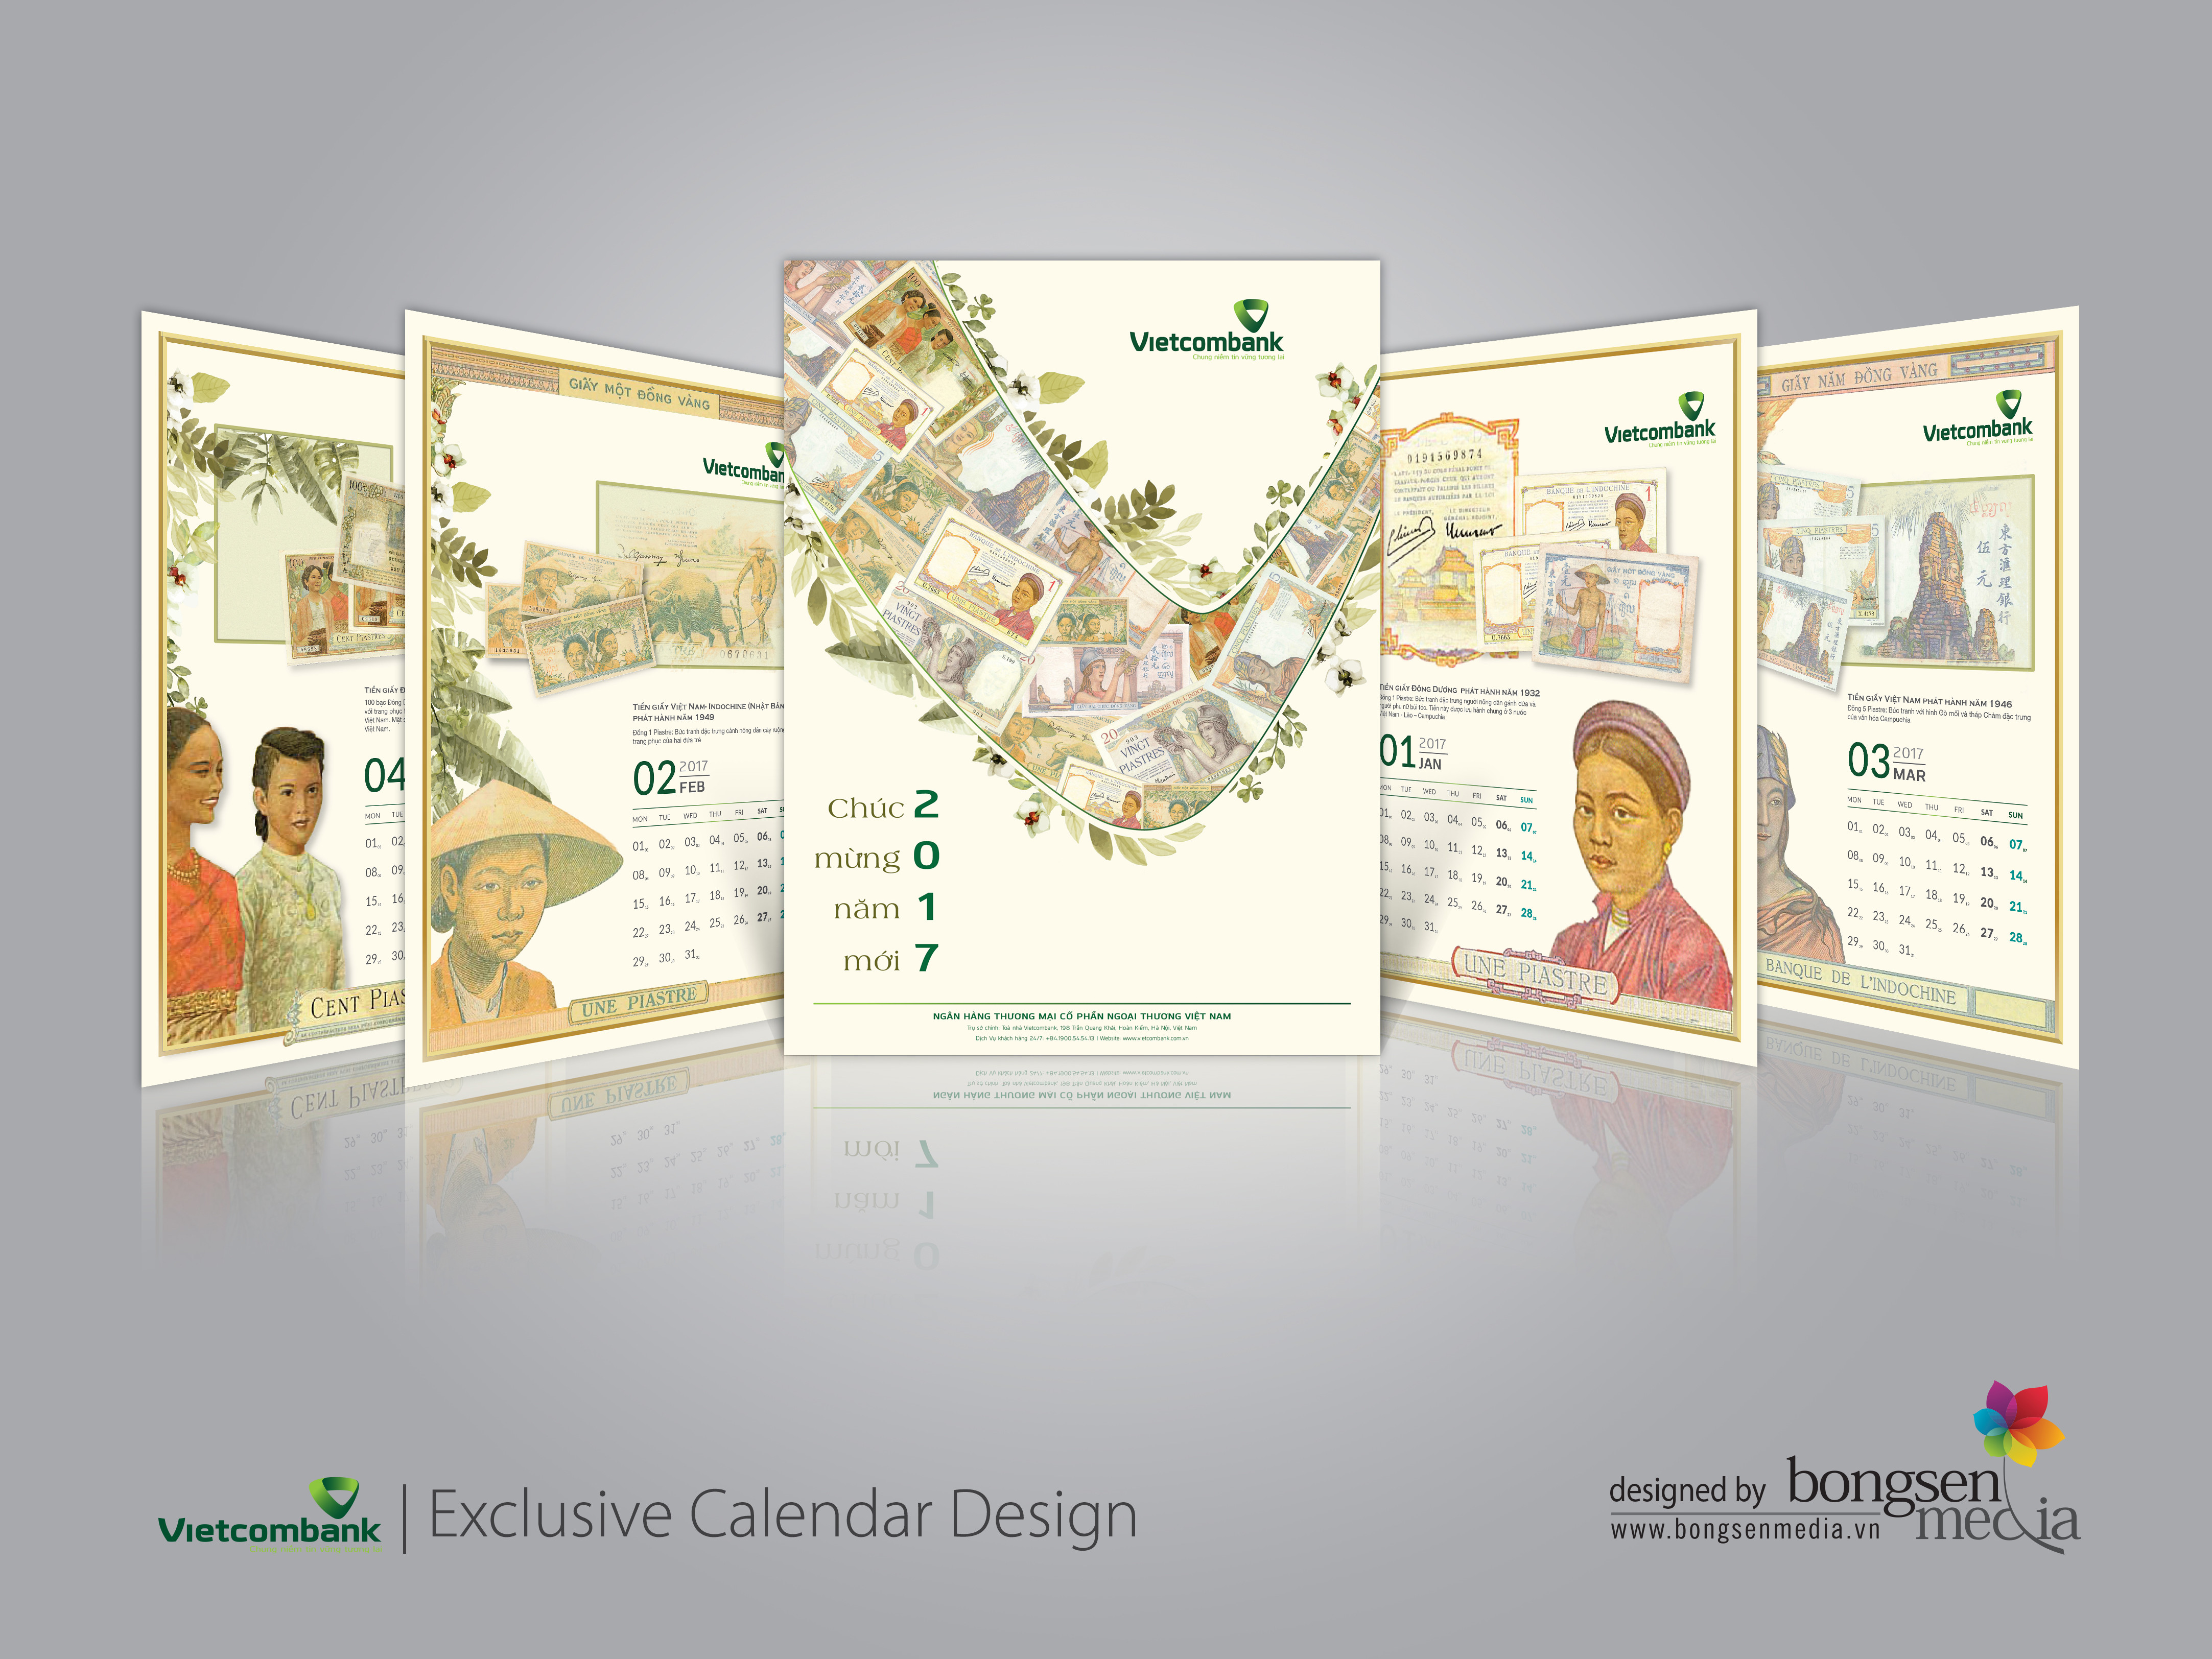 Thiết kế lịch độc quyền Vietcombank được thực hiện bởi BongSen Media